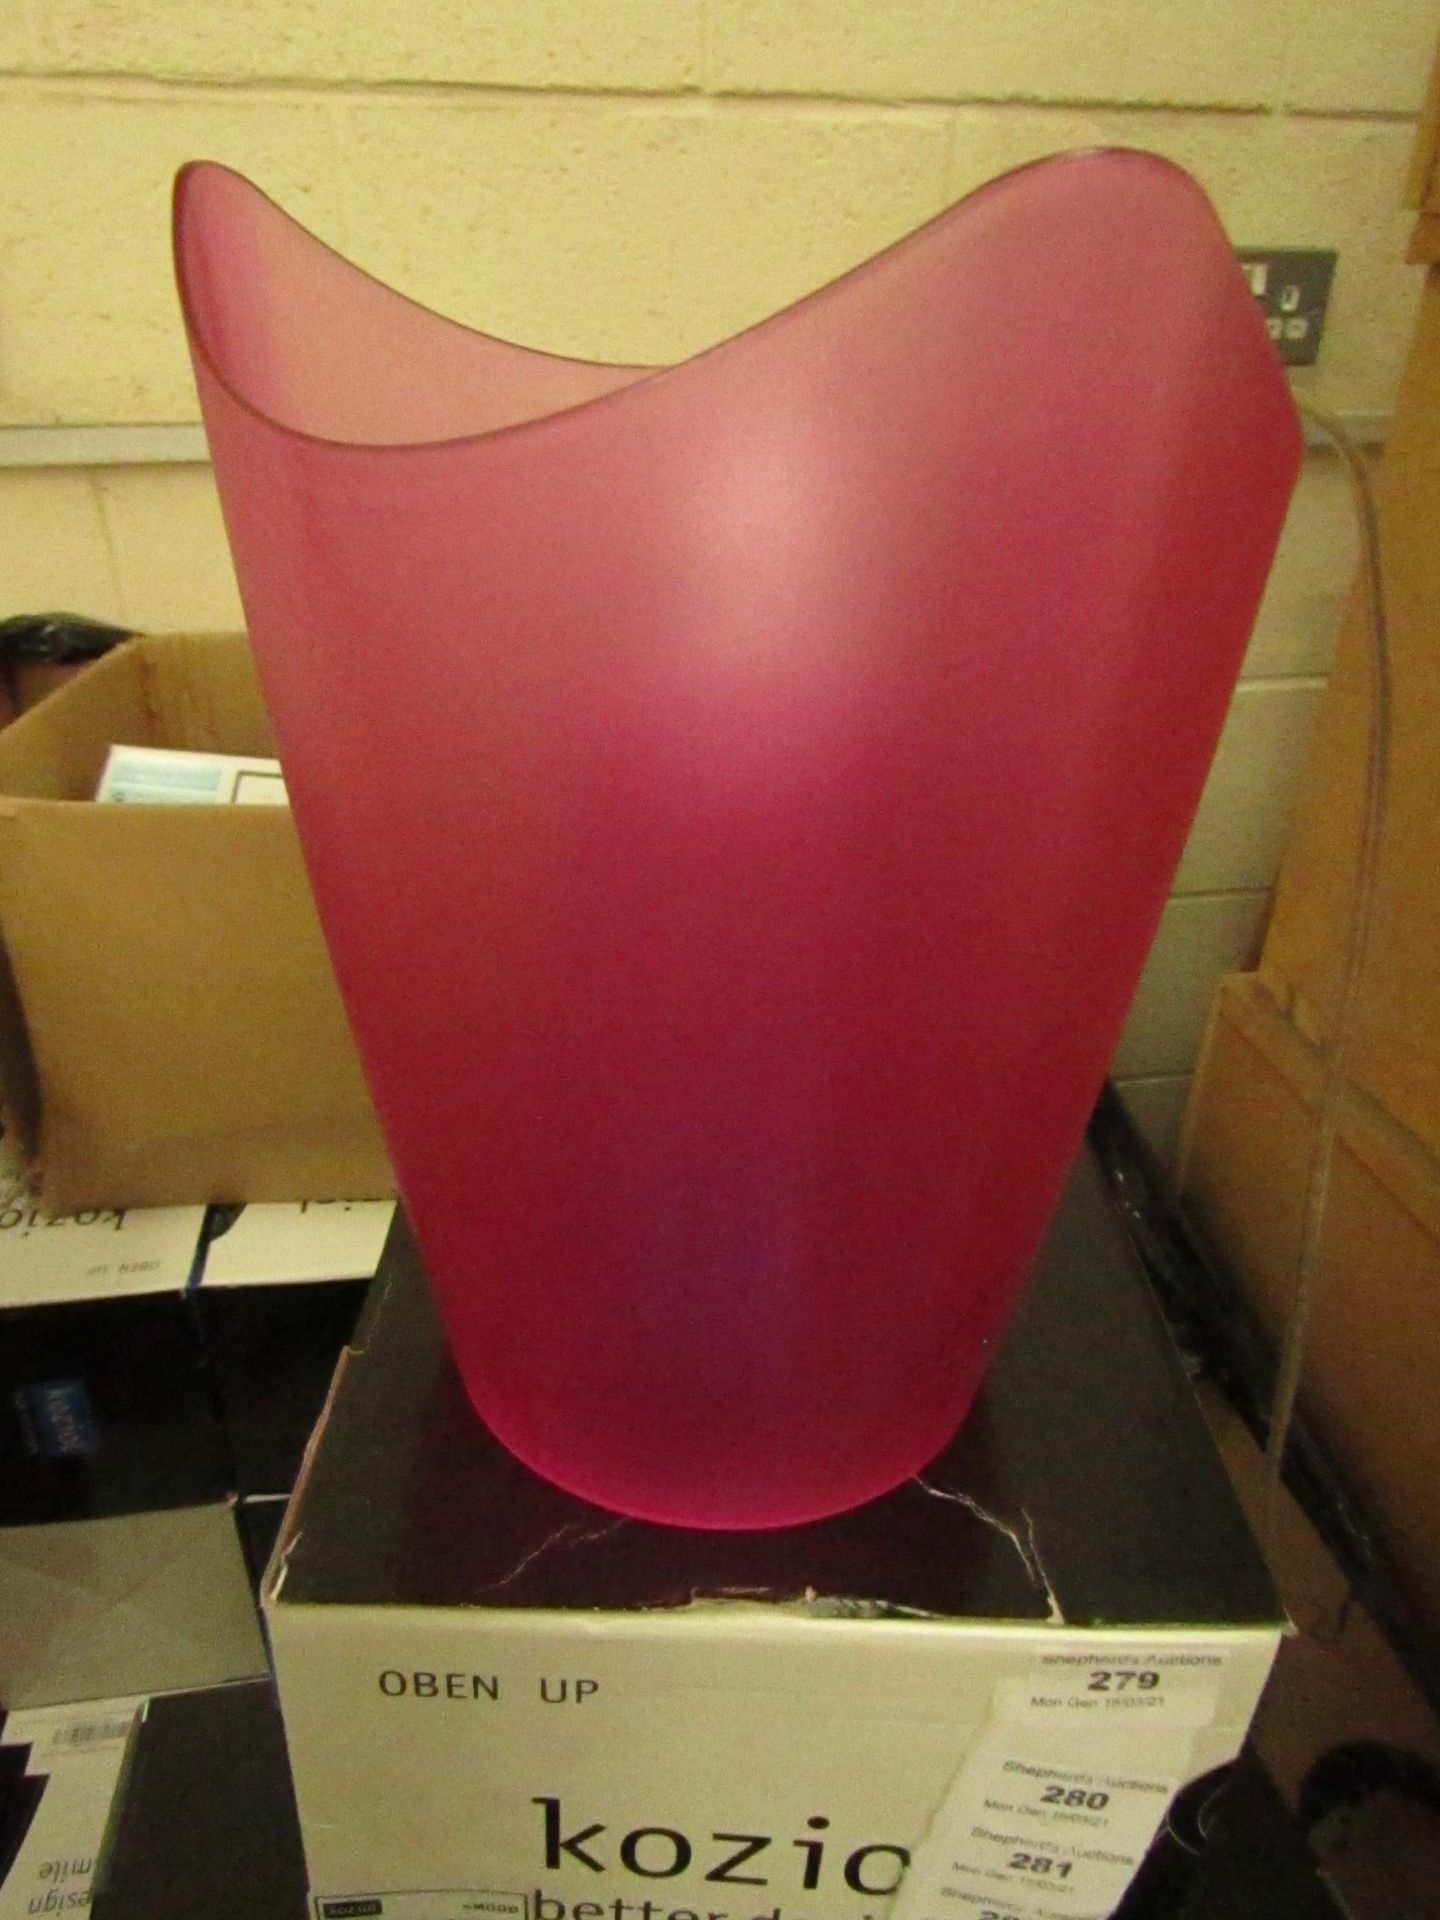 Koziol - Plastic Pink Desk Lamp (EU Plug) - New & Boxed.